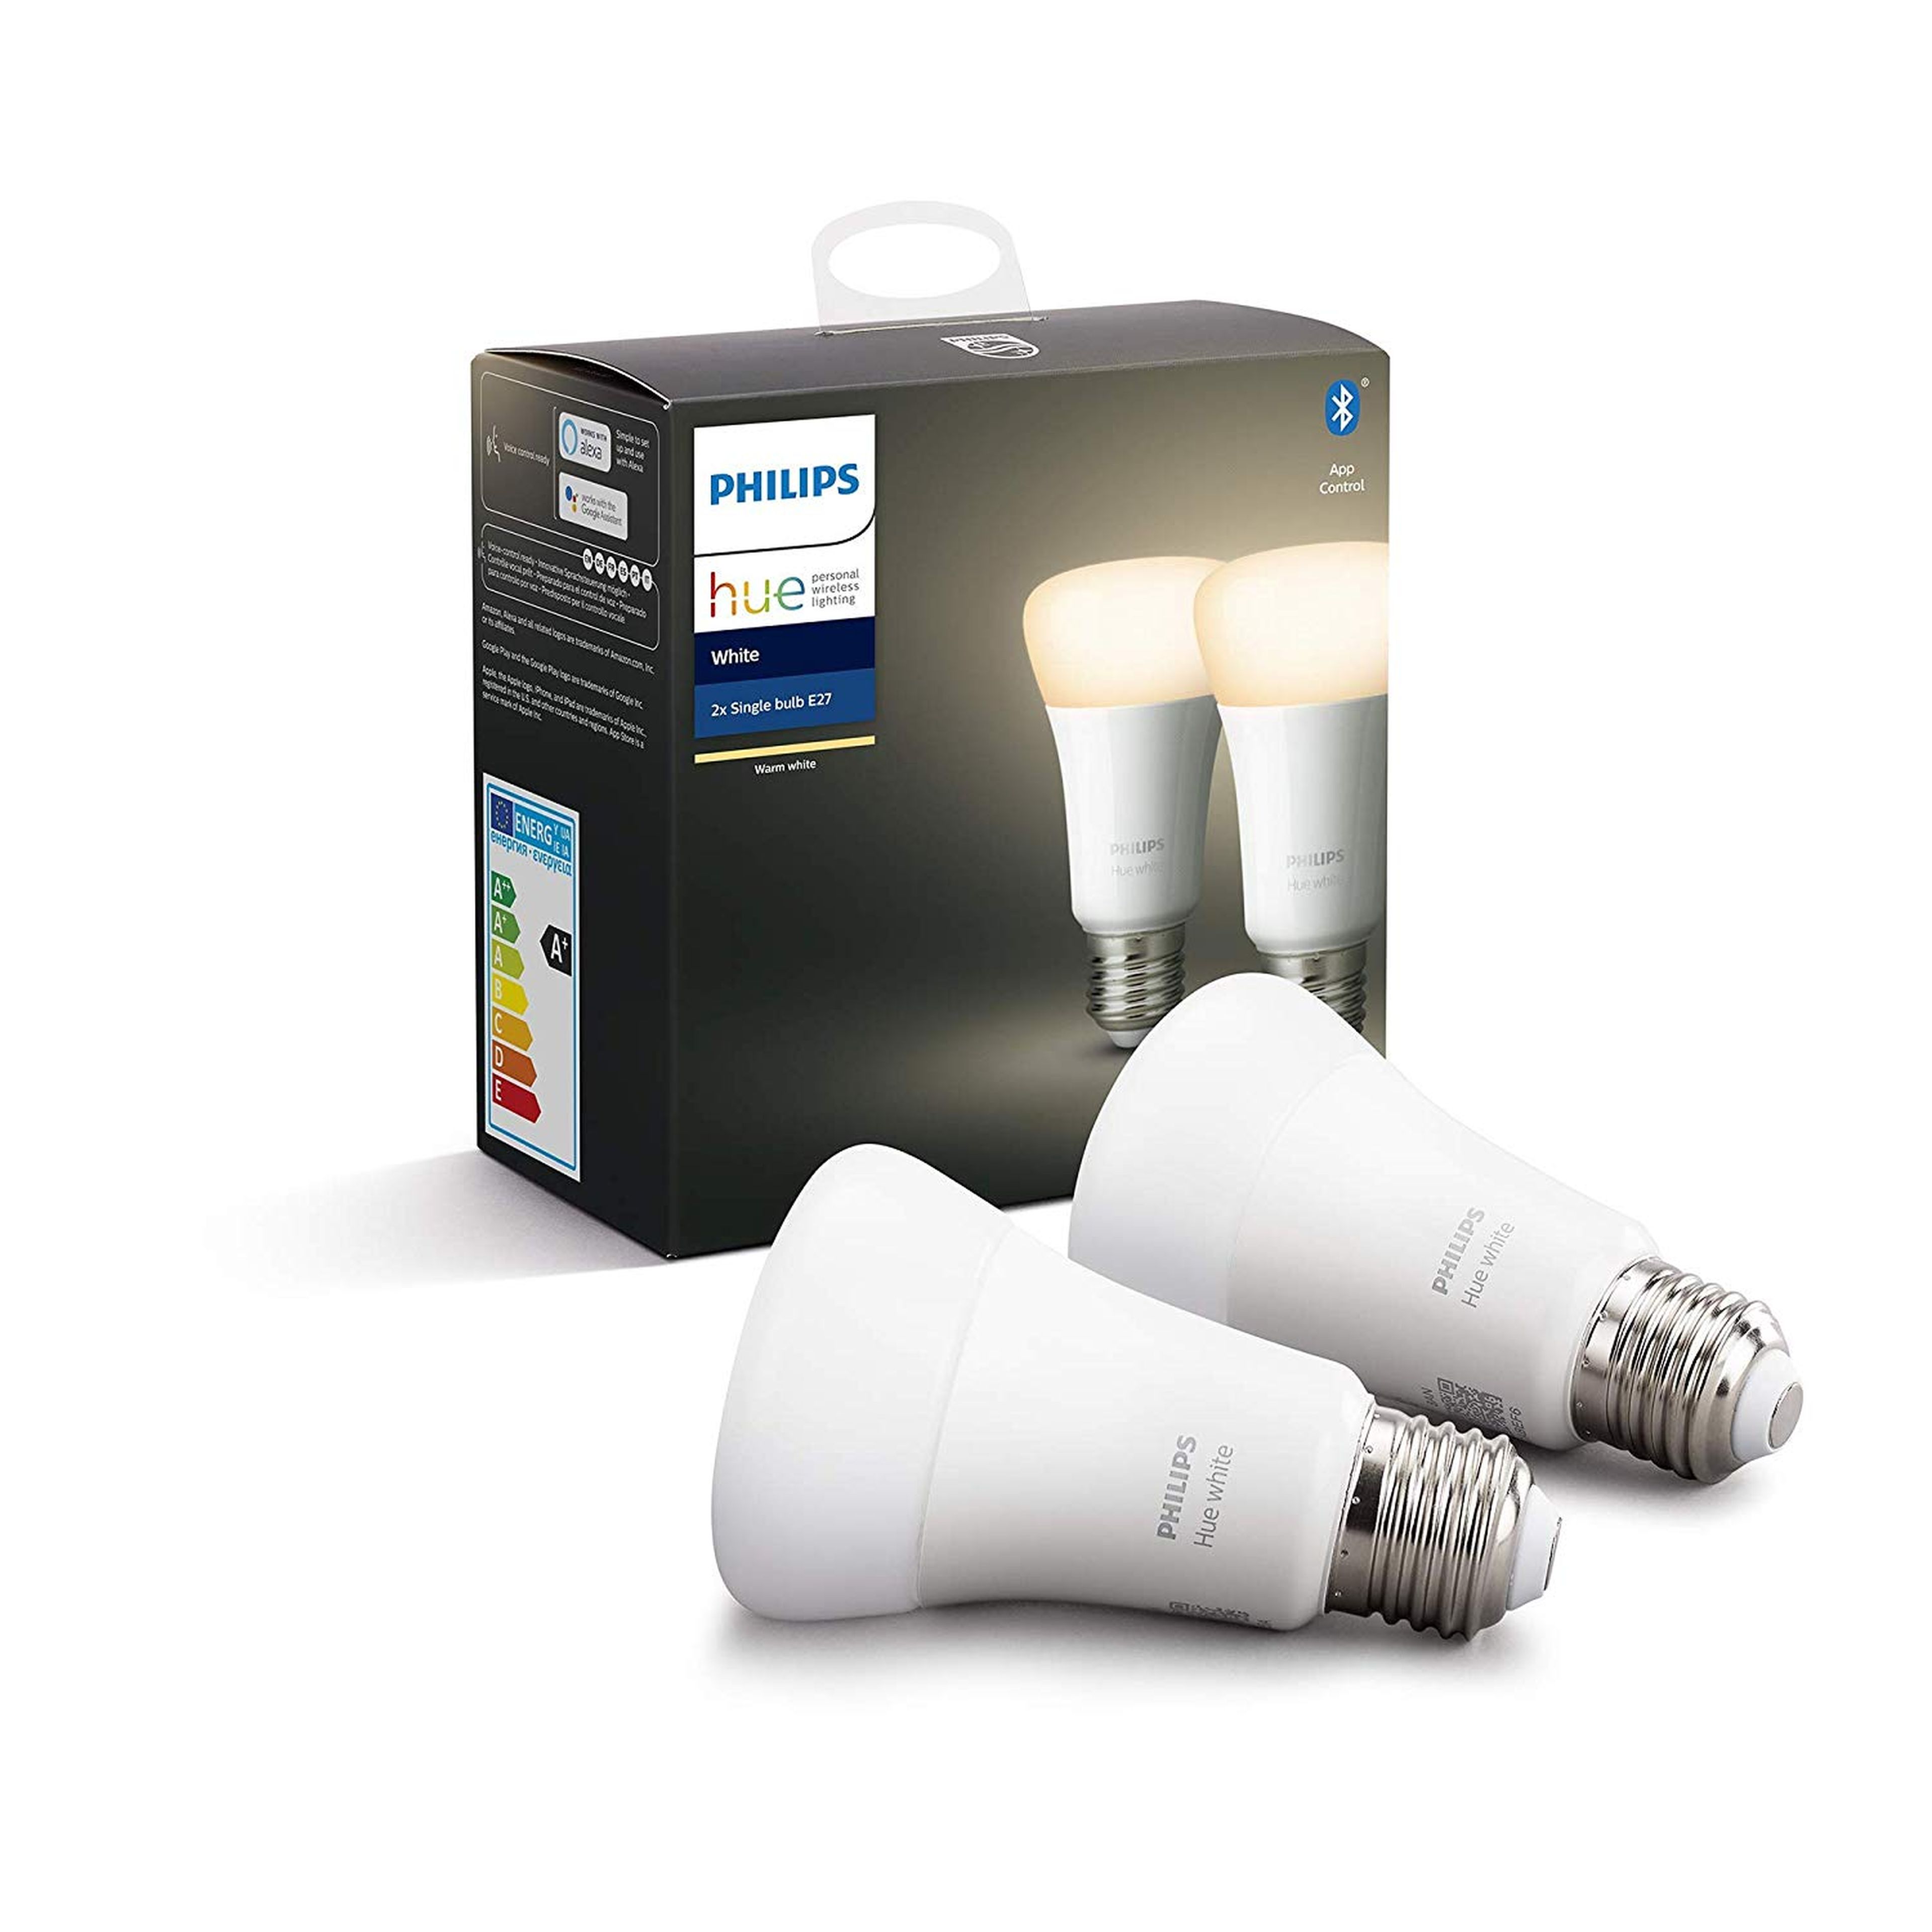 Pack de 2 bombillas LED inteligentes